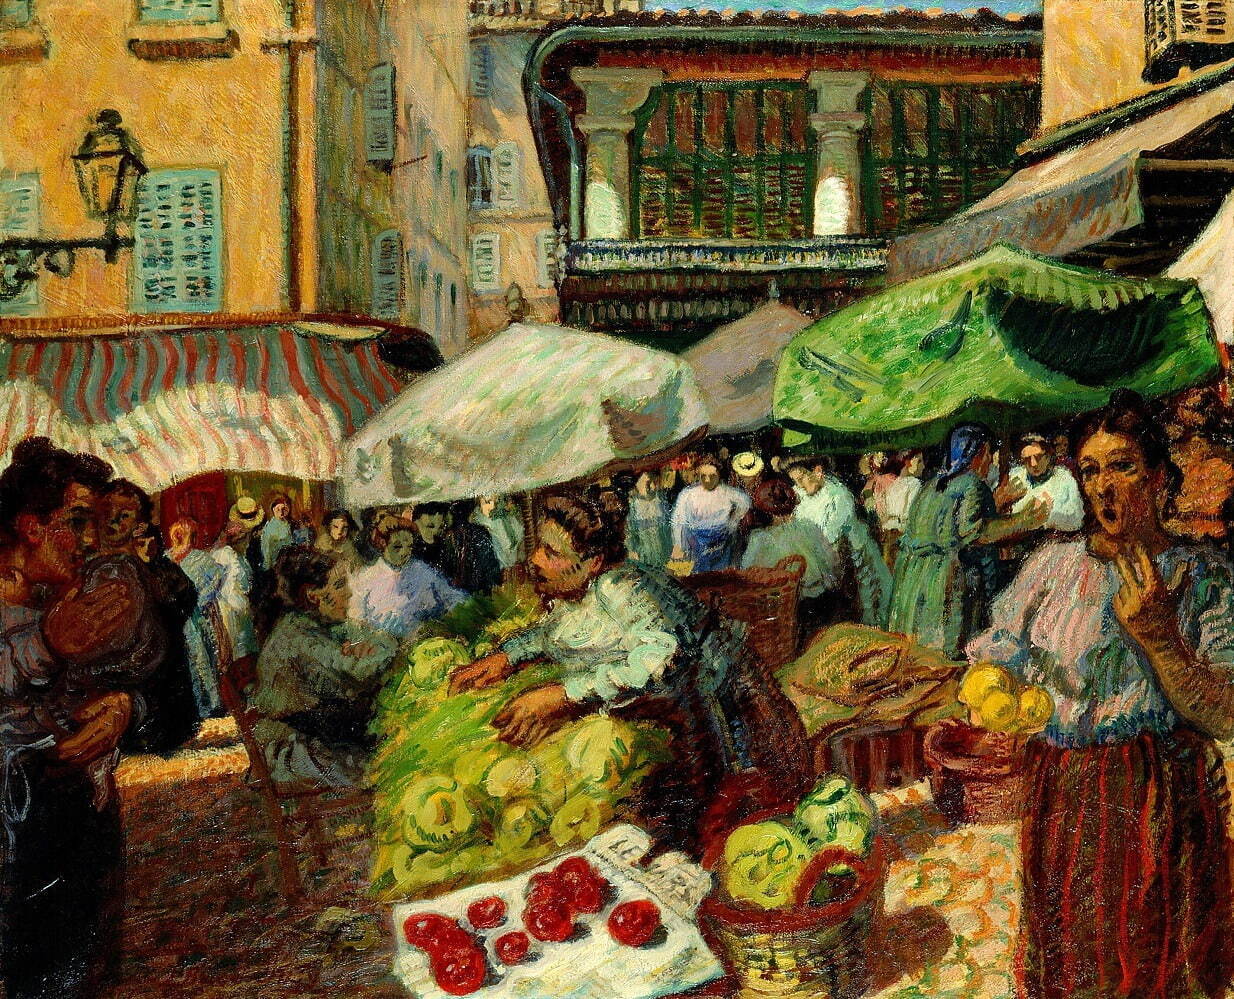 ラウル・デュフィ《マルセイユの市場》 1903年
油彩／カンヴァス スイス プチ・パレ美術館
ASSOCIATION DES AMIS DU PETIT PALAIS, GENEVE